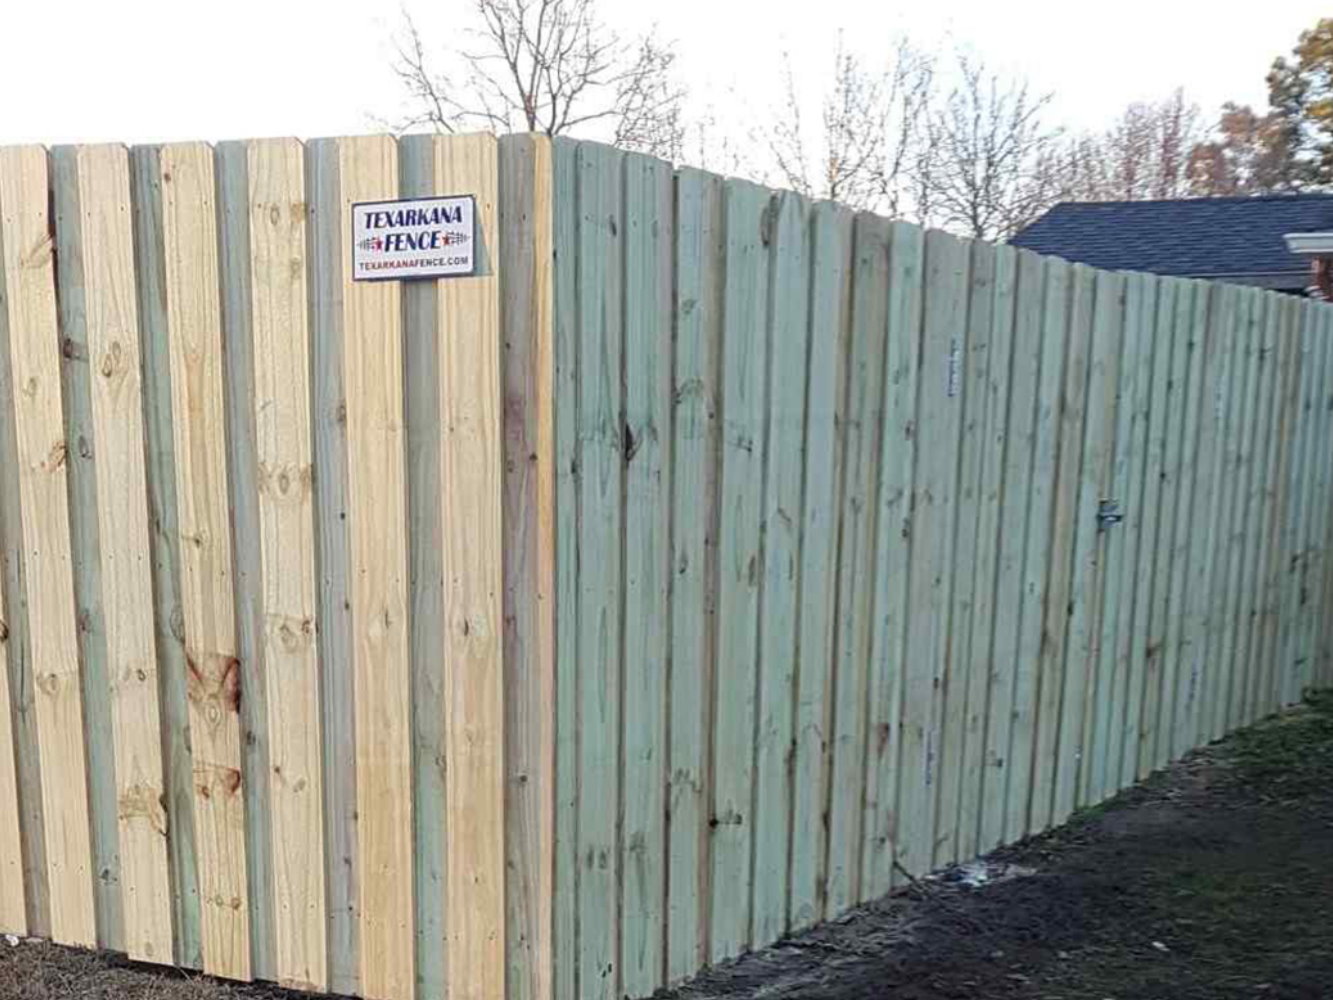 New Boston TX Shadowbox style wood fence